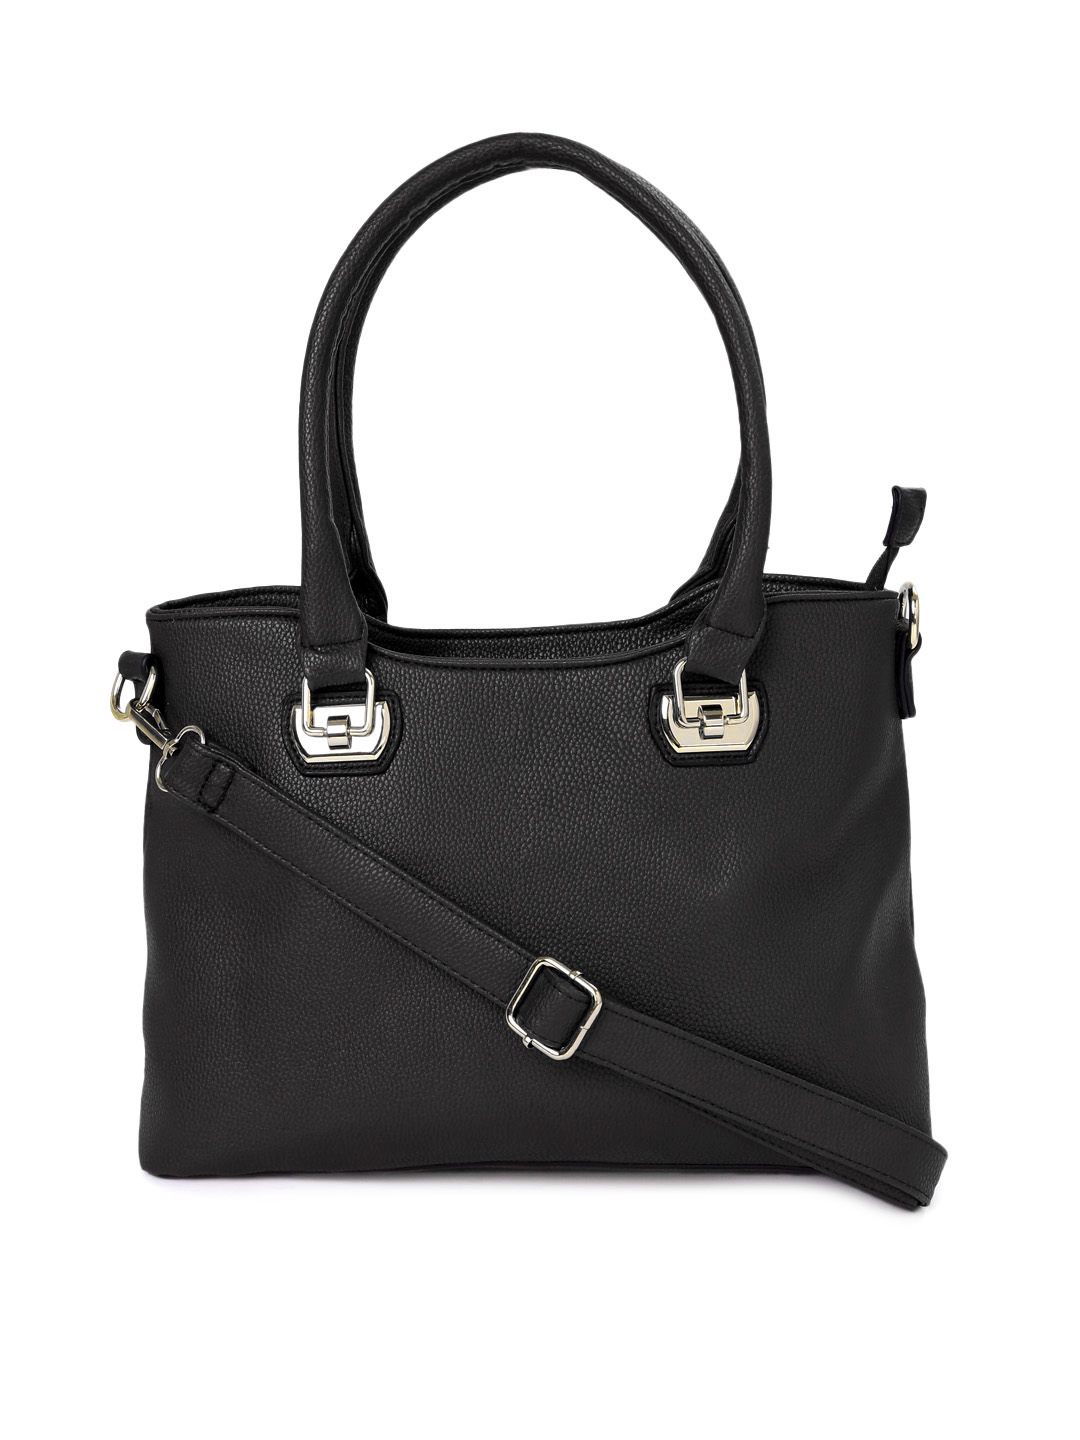 Buy DressBerry Black Solid Shoulder Bag - Handbags for Women 2033590 ...